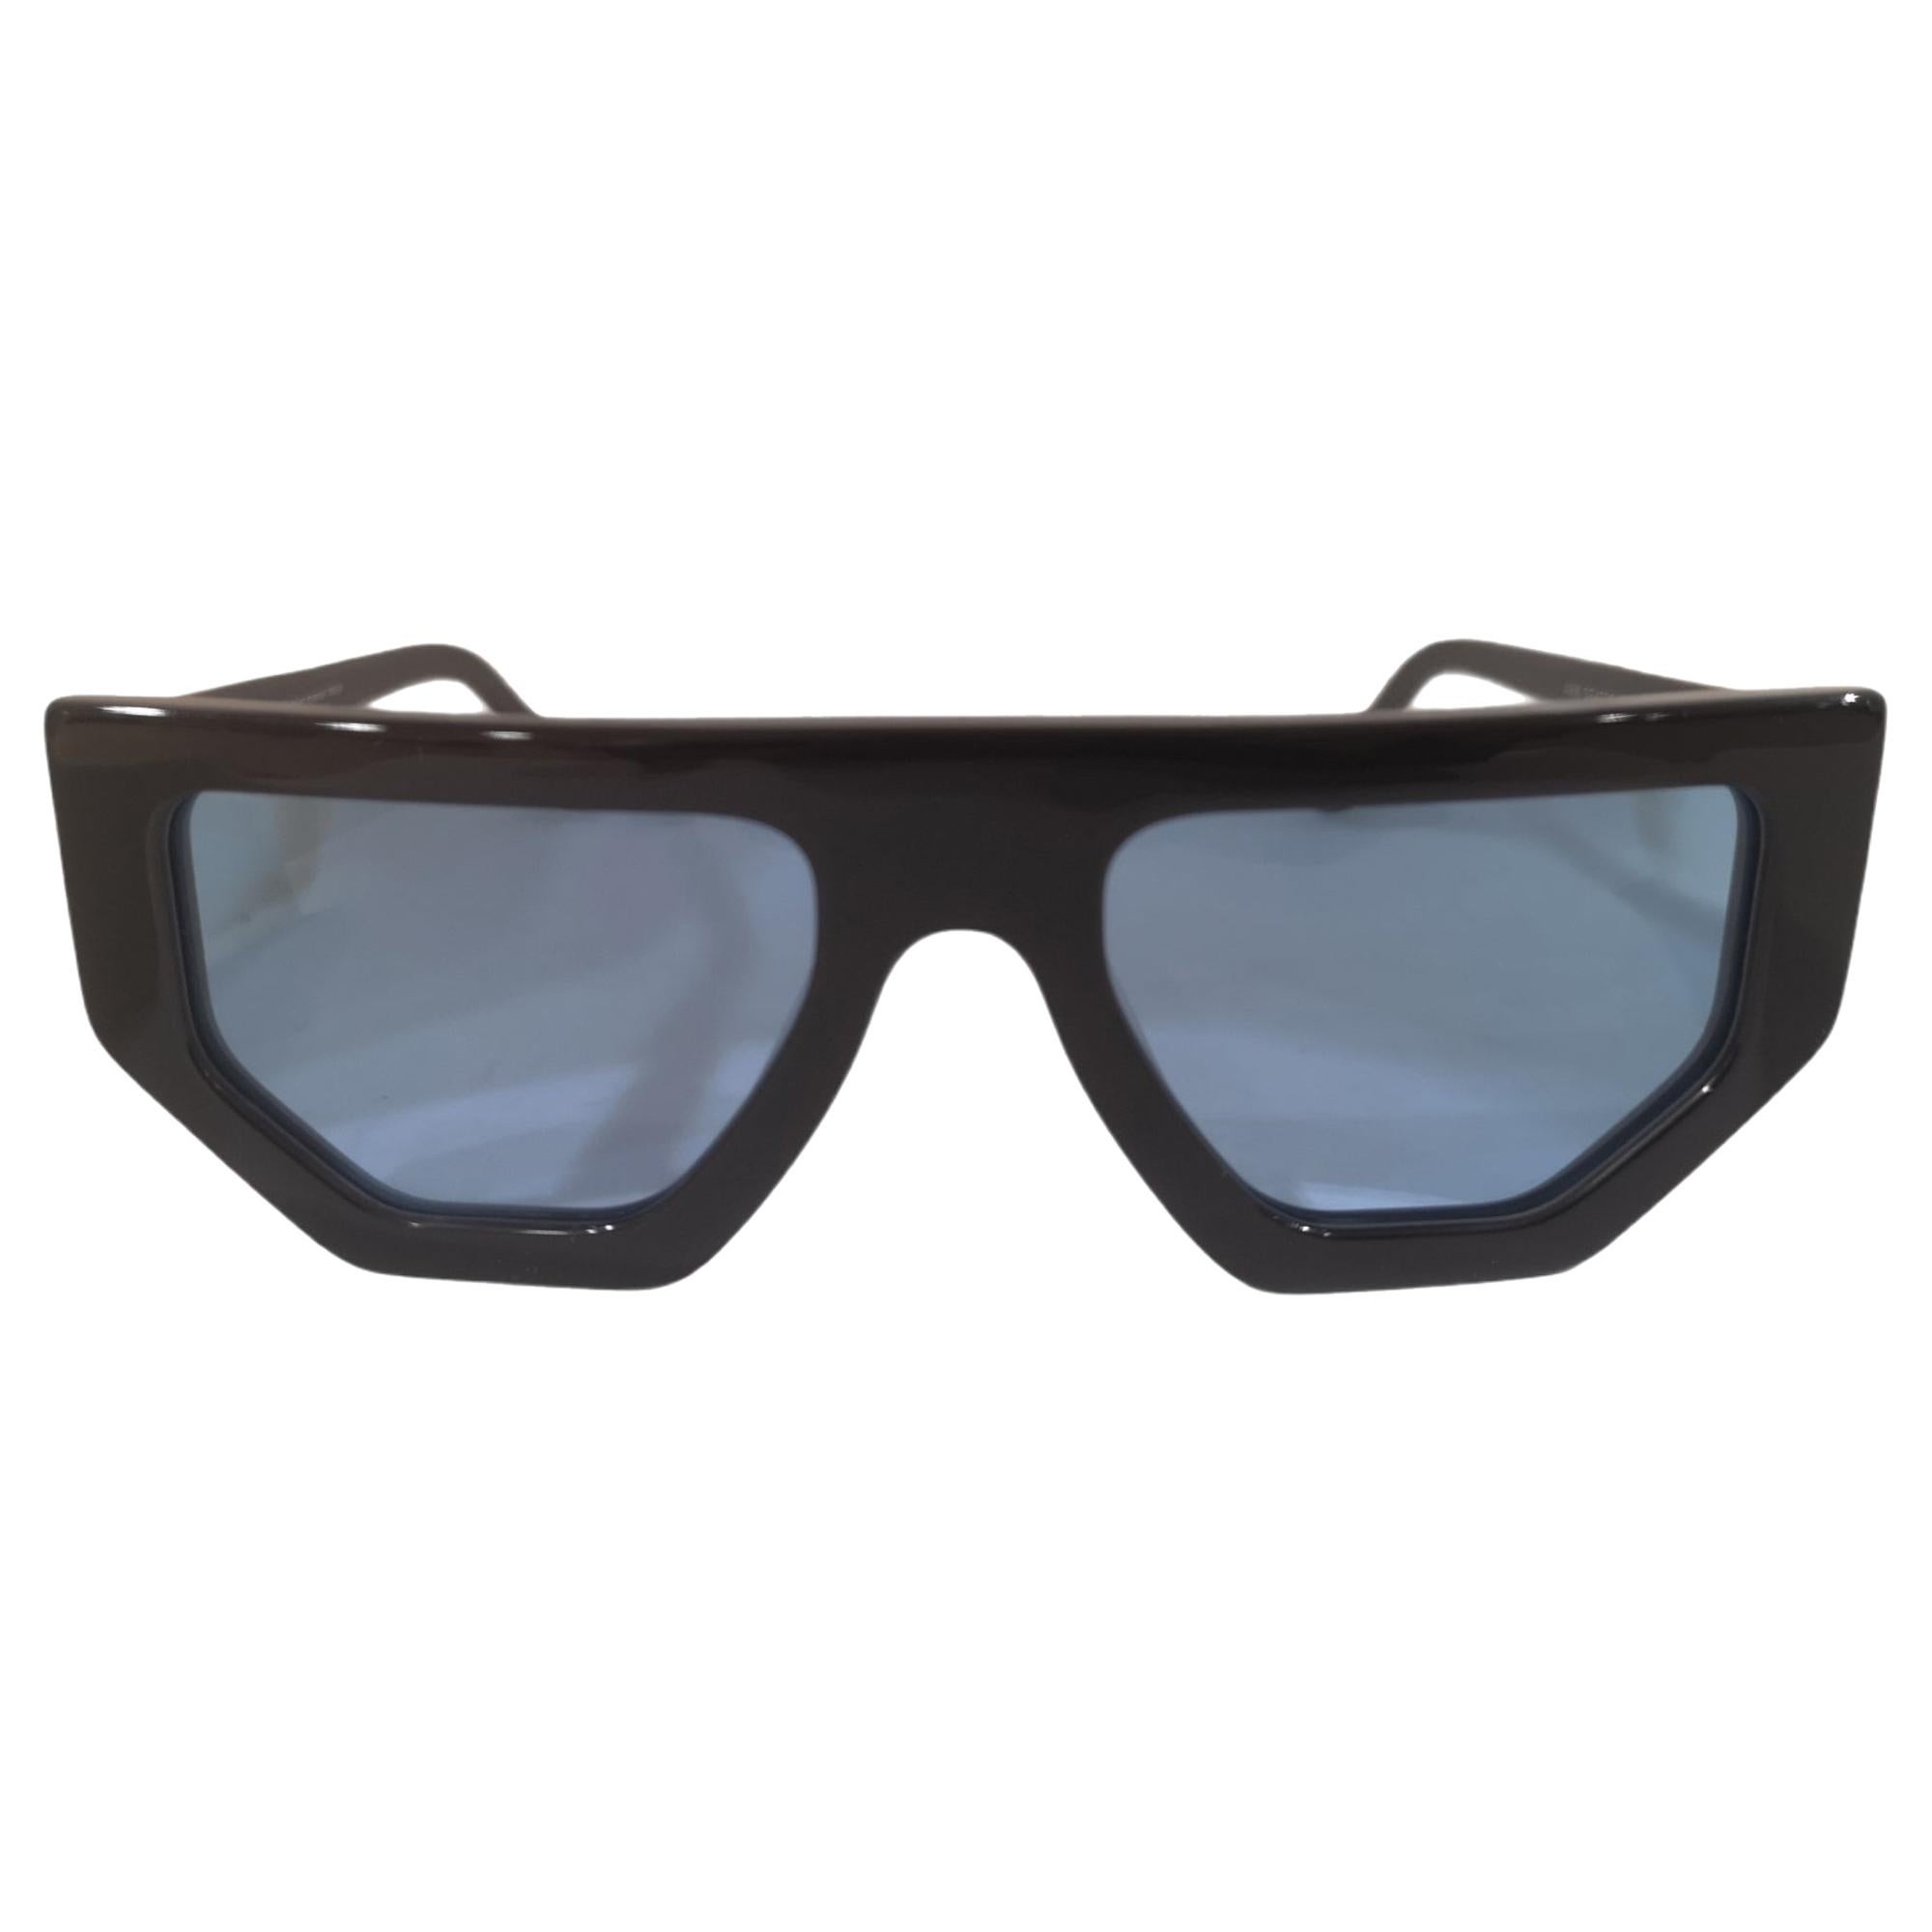 Black light blue lens sunglasses